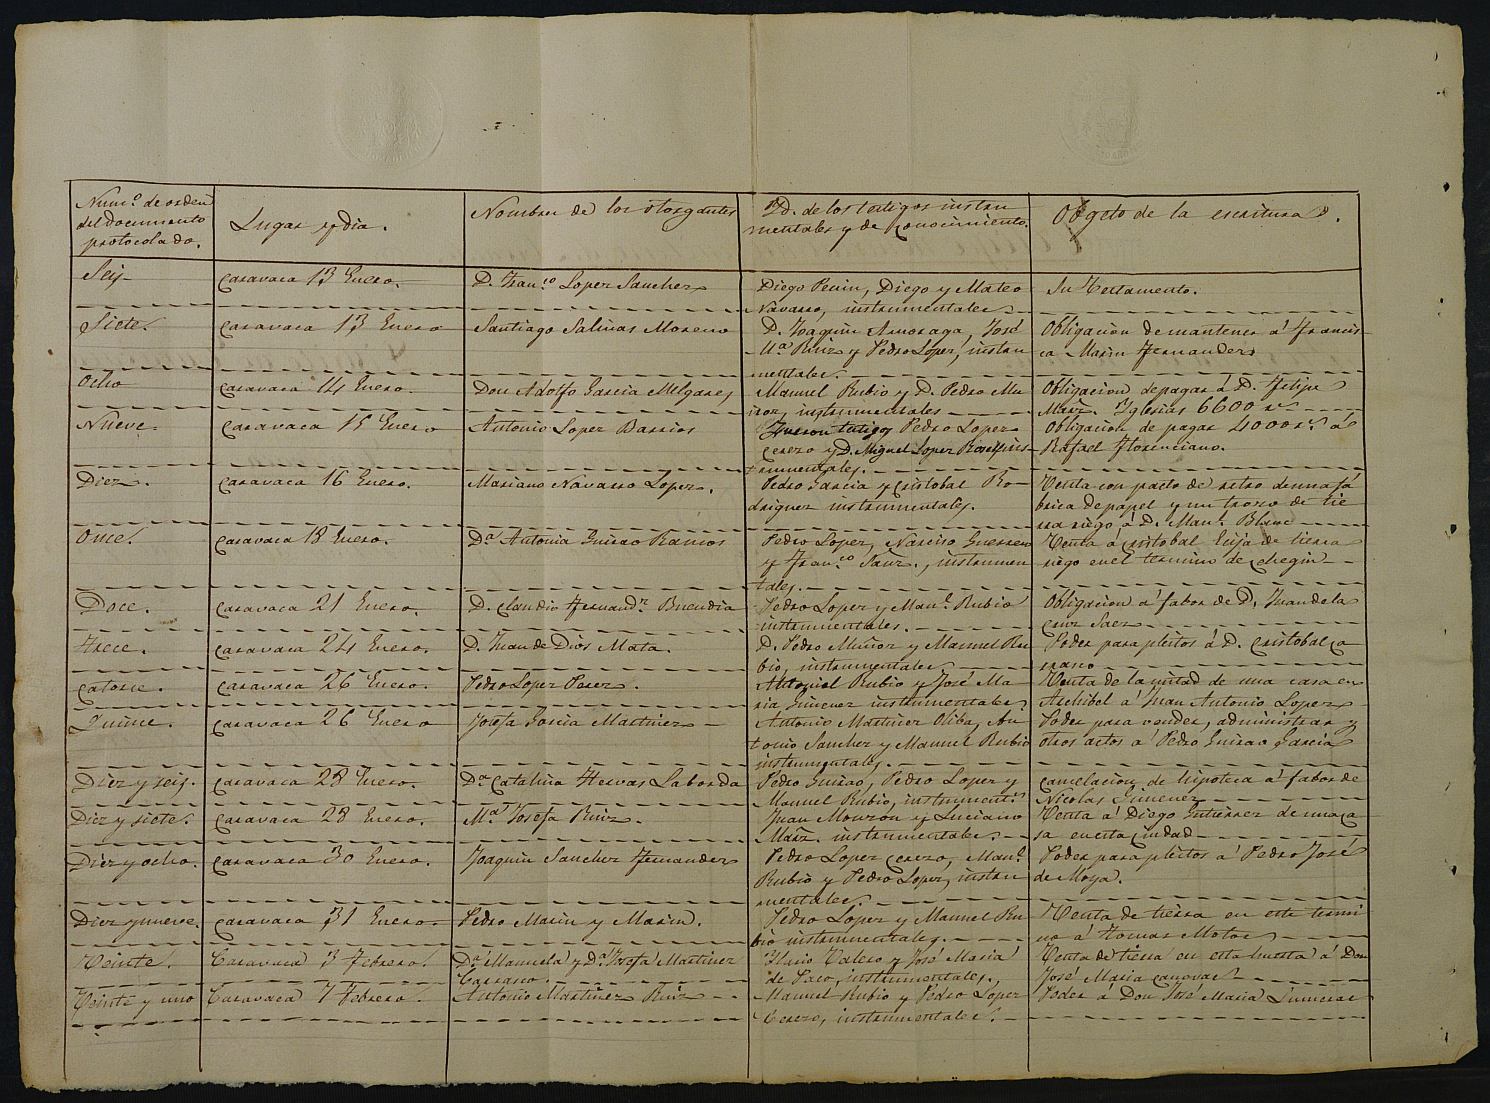 Registro de Juan Ramón Godínez, Caravaca de la Cruz. Tomo 2. Año 1863.